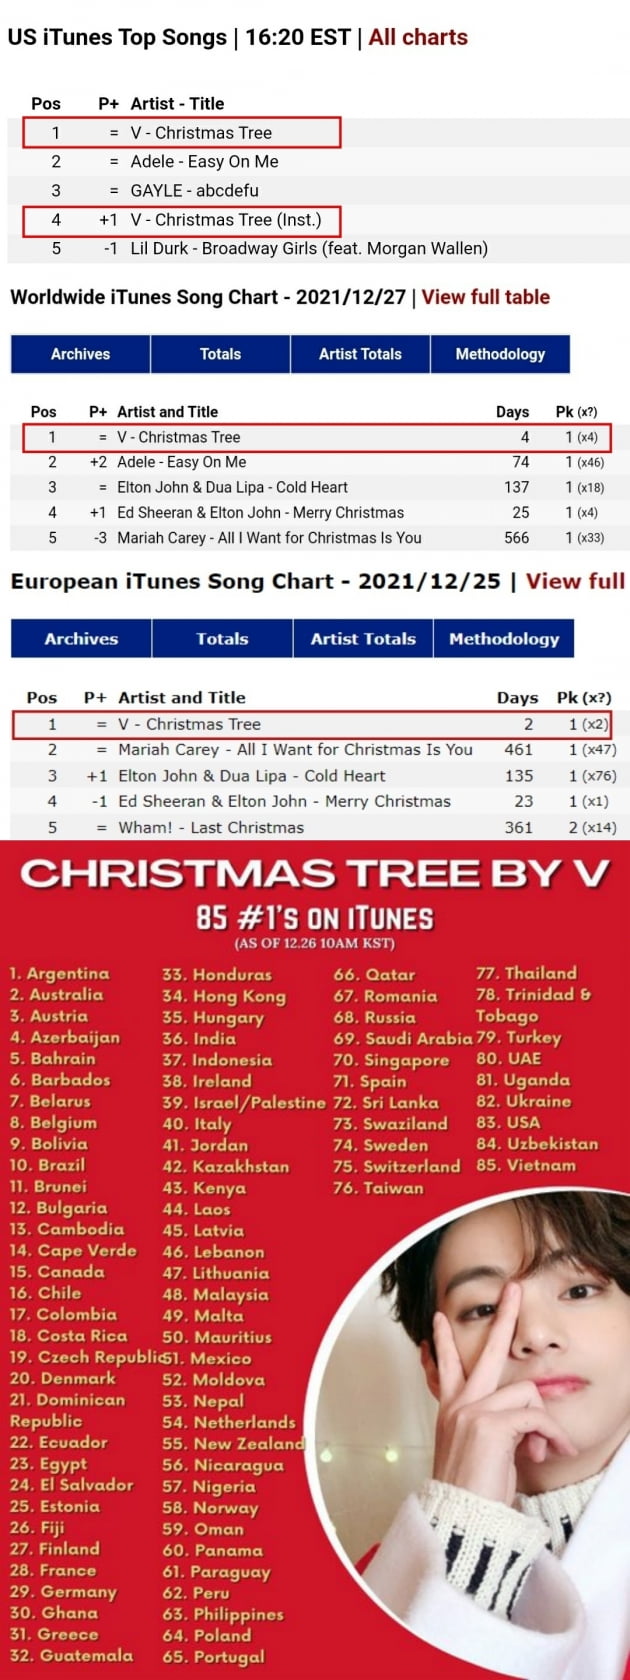 방탄소년단 뷔,음원최강자 OST ‘Christmas Tree’ 미국+월드와이드 아이튠즈 4일 연속 1위